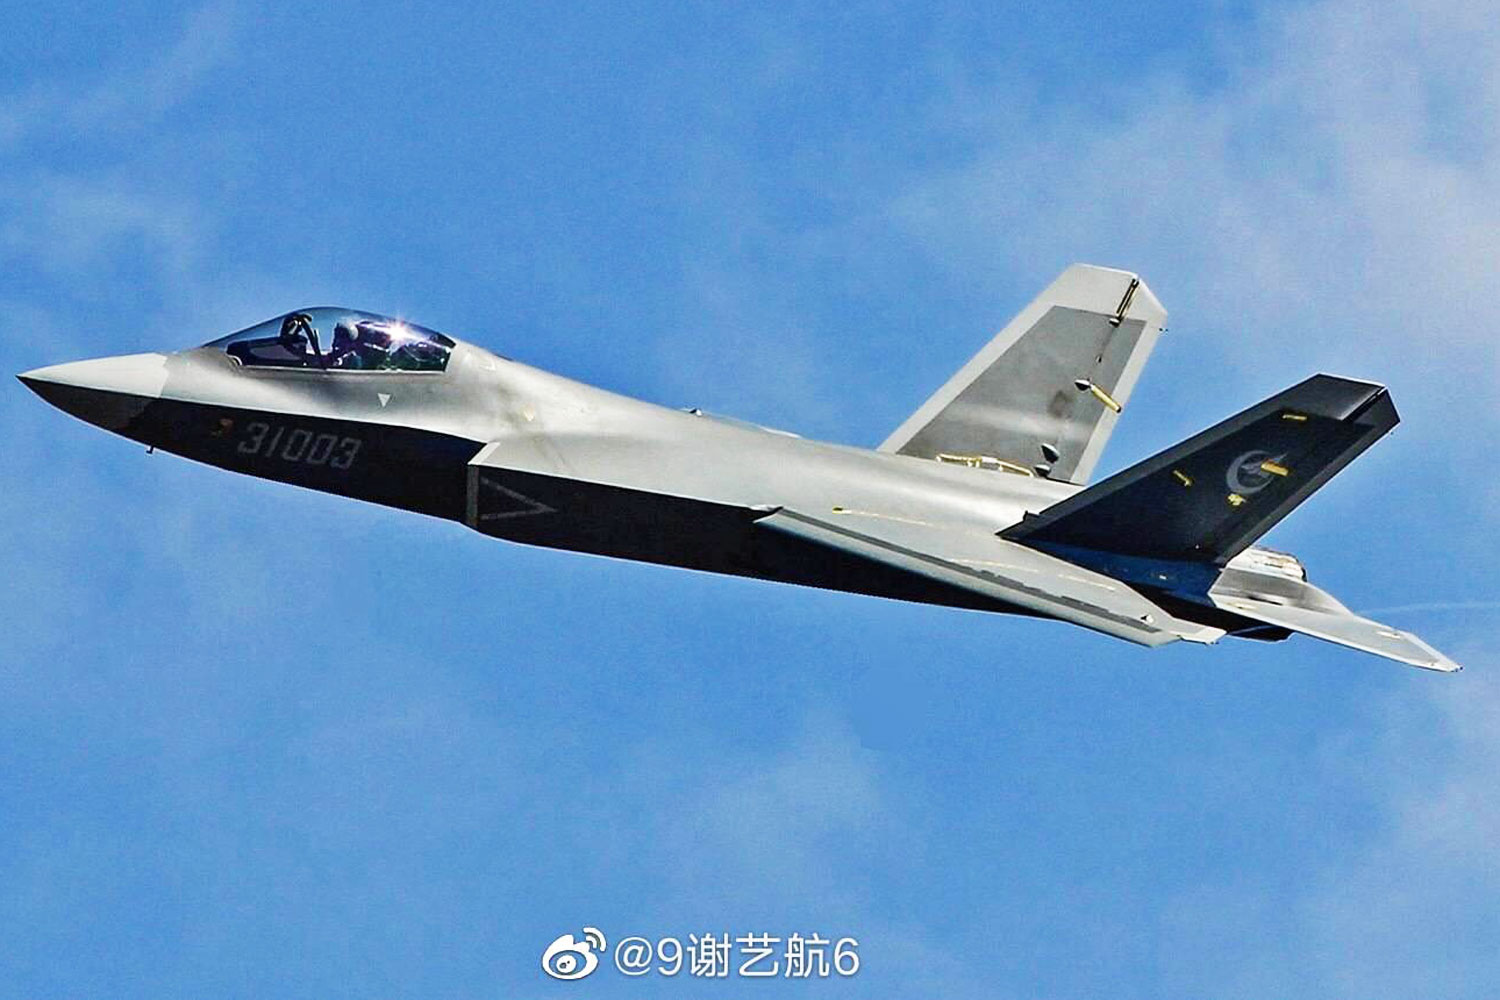 China Fighter Jet J 31